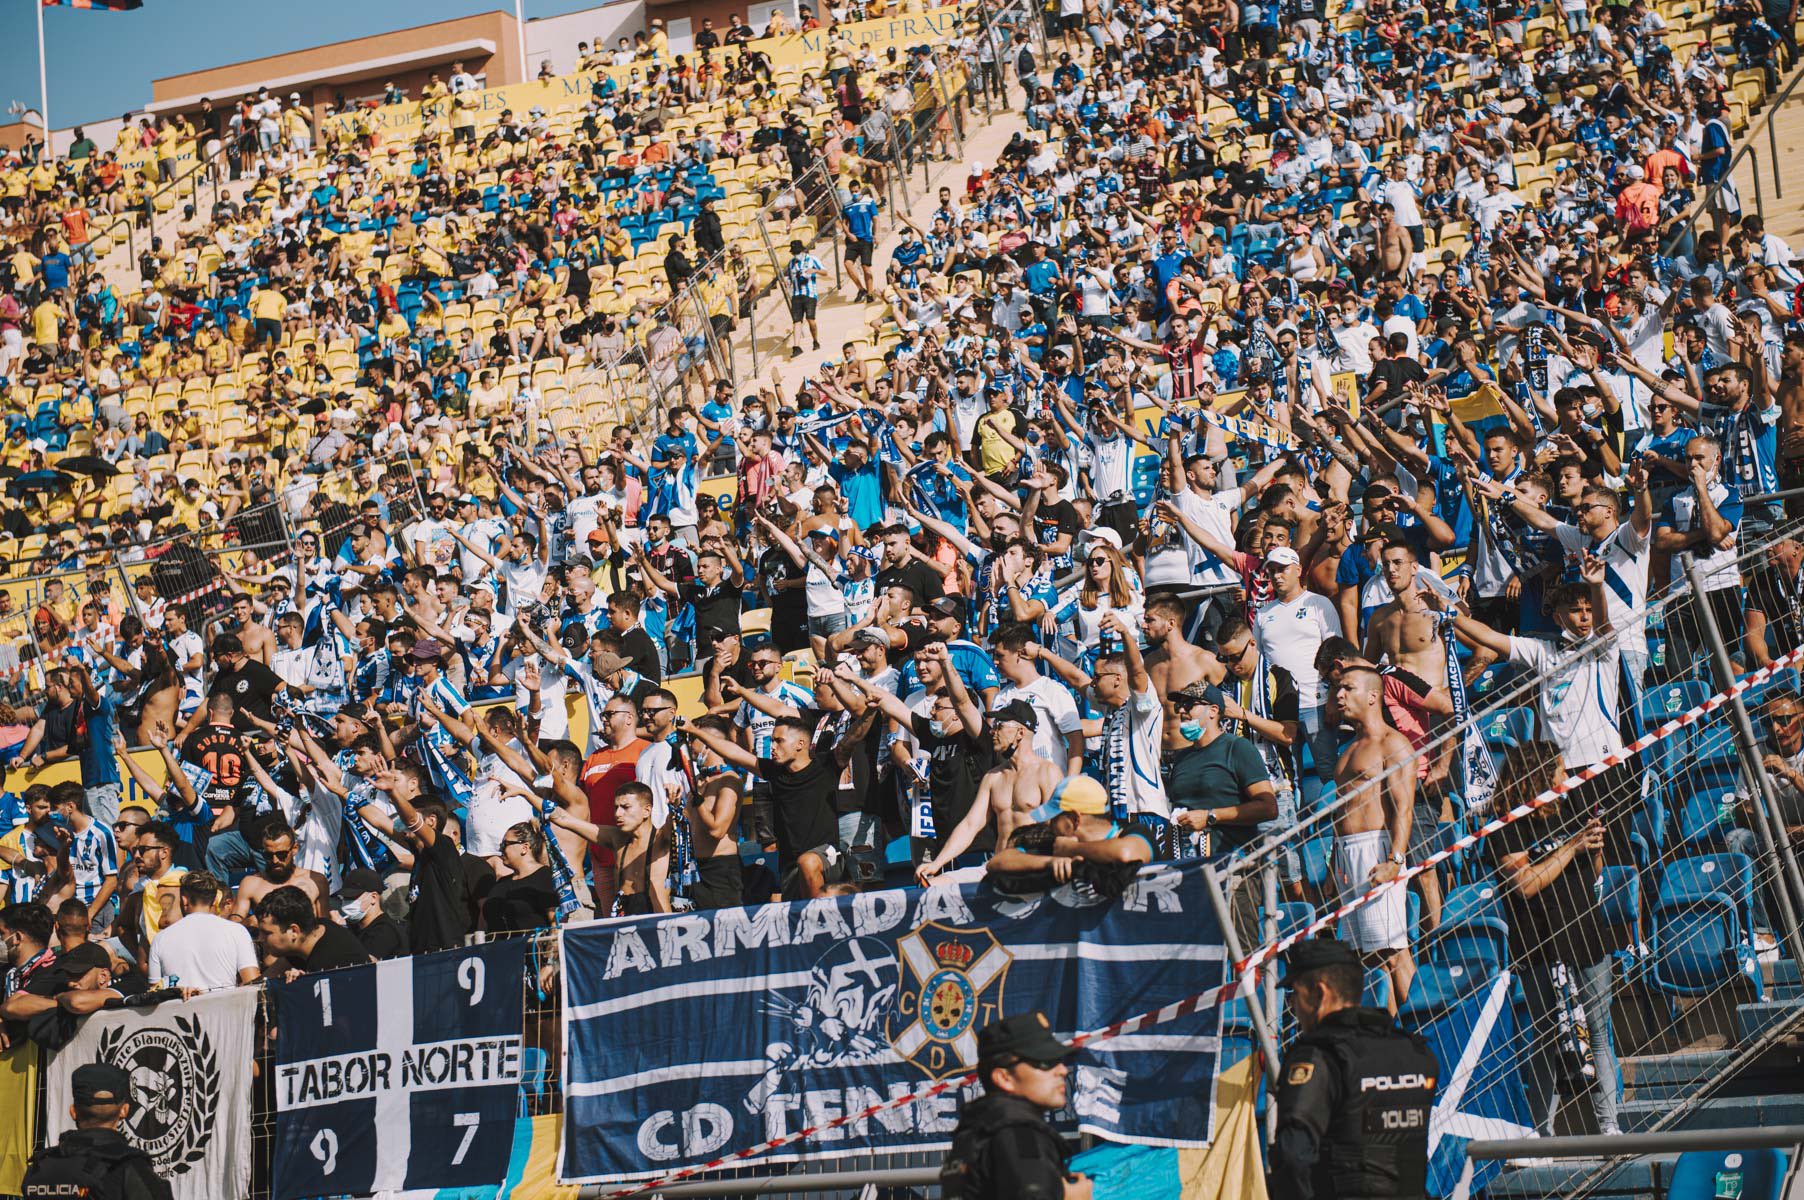 La UD Las Palmas da 690 entradas al CD Tenerife para el derbi, solo el 2'1% del aforo total